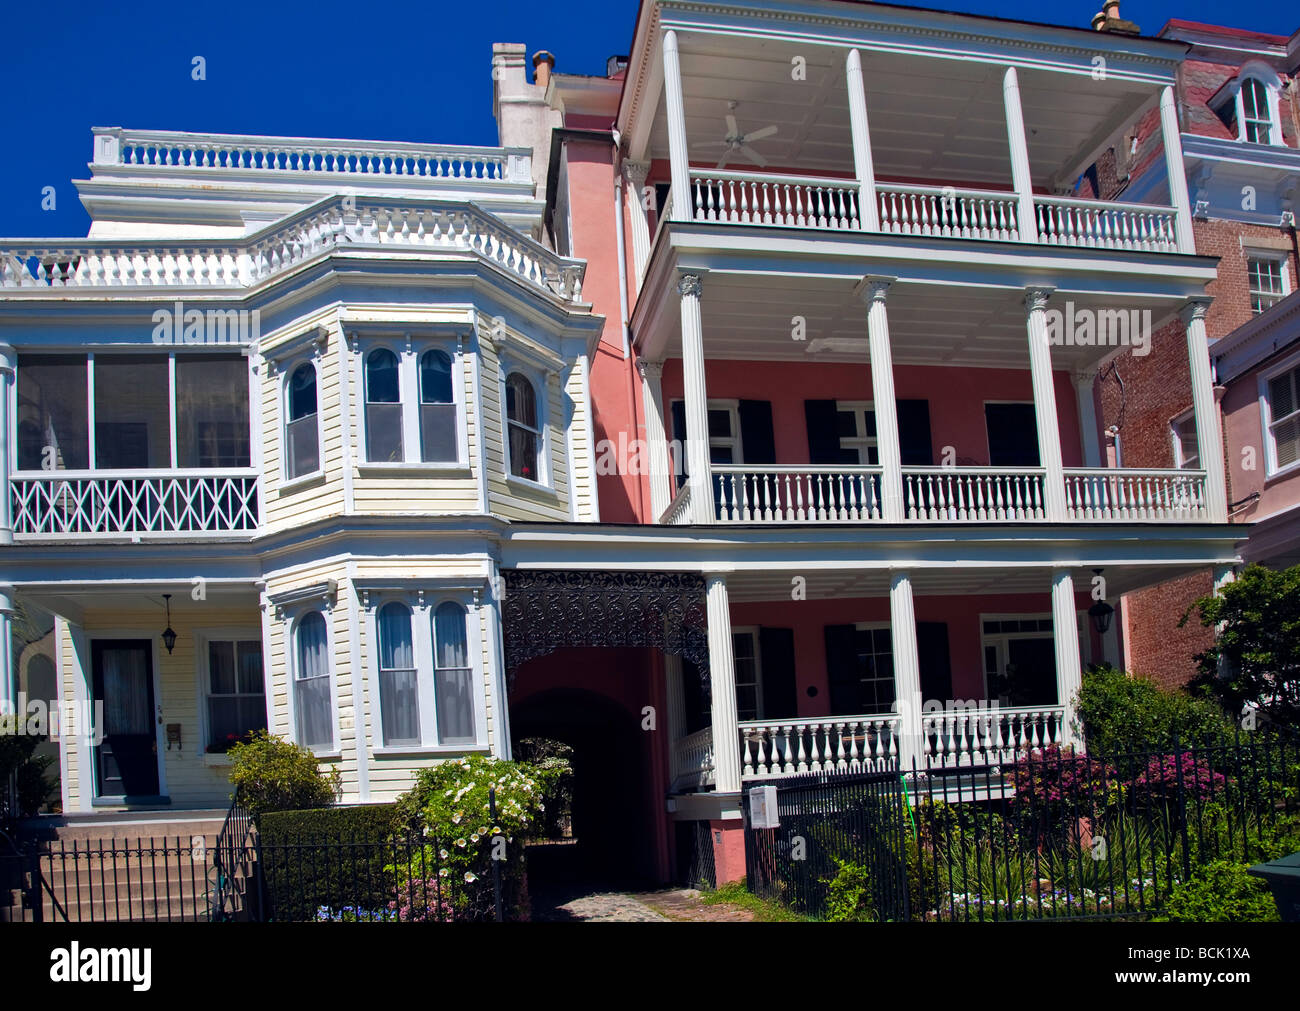 Casa de estilo tradicional victoriano;villa o mansión en Charleston, Carolina del Sur, Estados Unidos, América del Norte Foto de stock